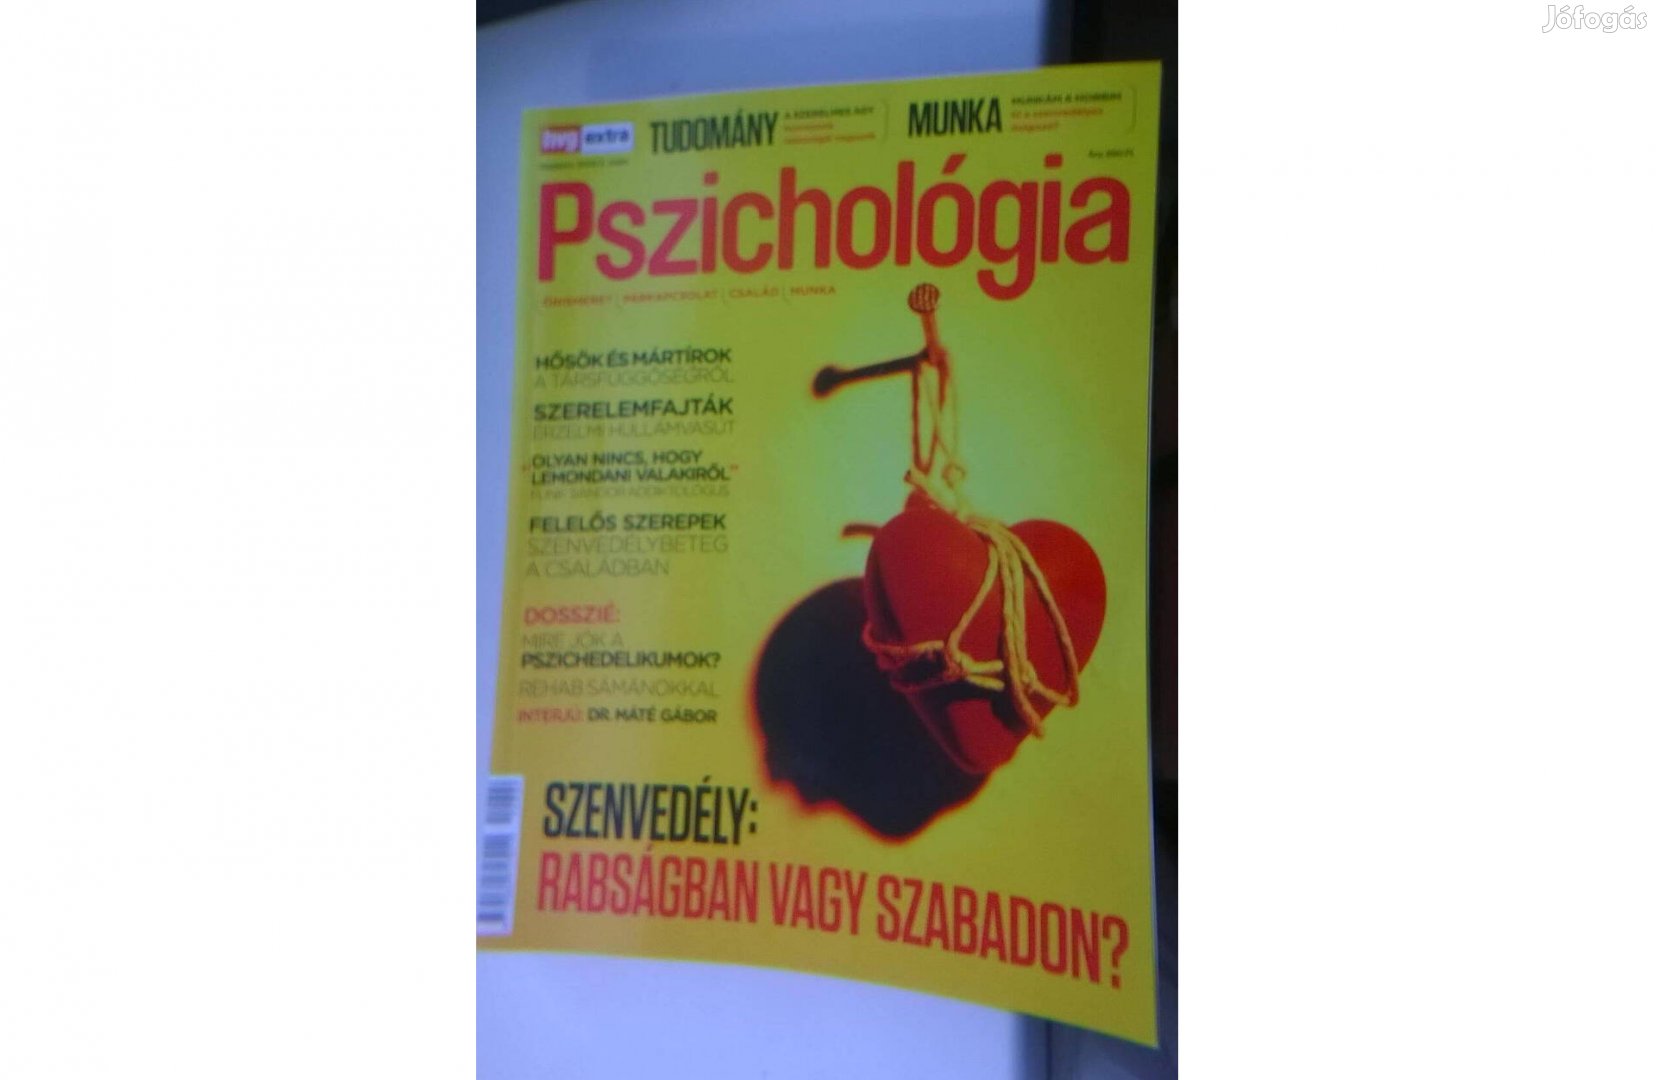 Pszichológia magazin - Tudomány , munka , újszerű állapotú